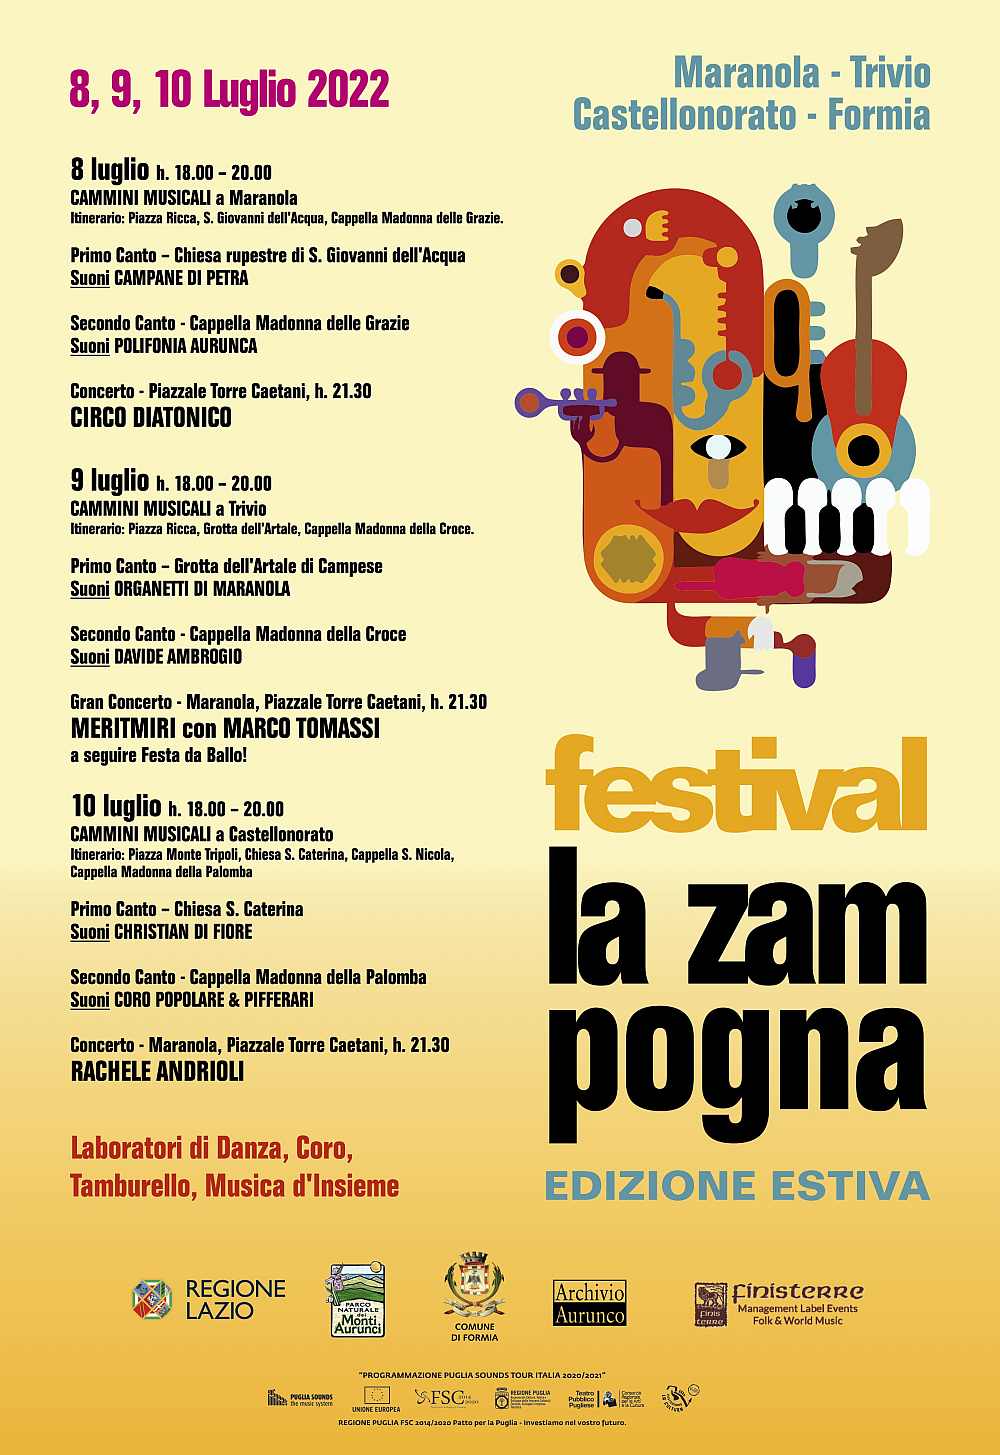 Formia (LT)
"Festival La Zampogna"
8-9-10 Luglio 2022 